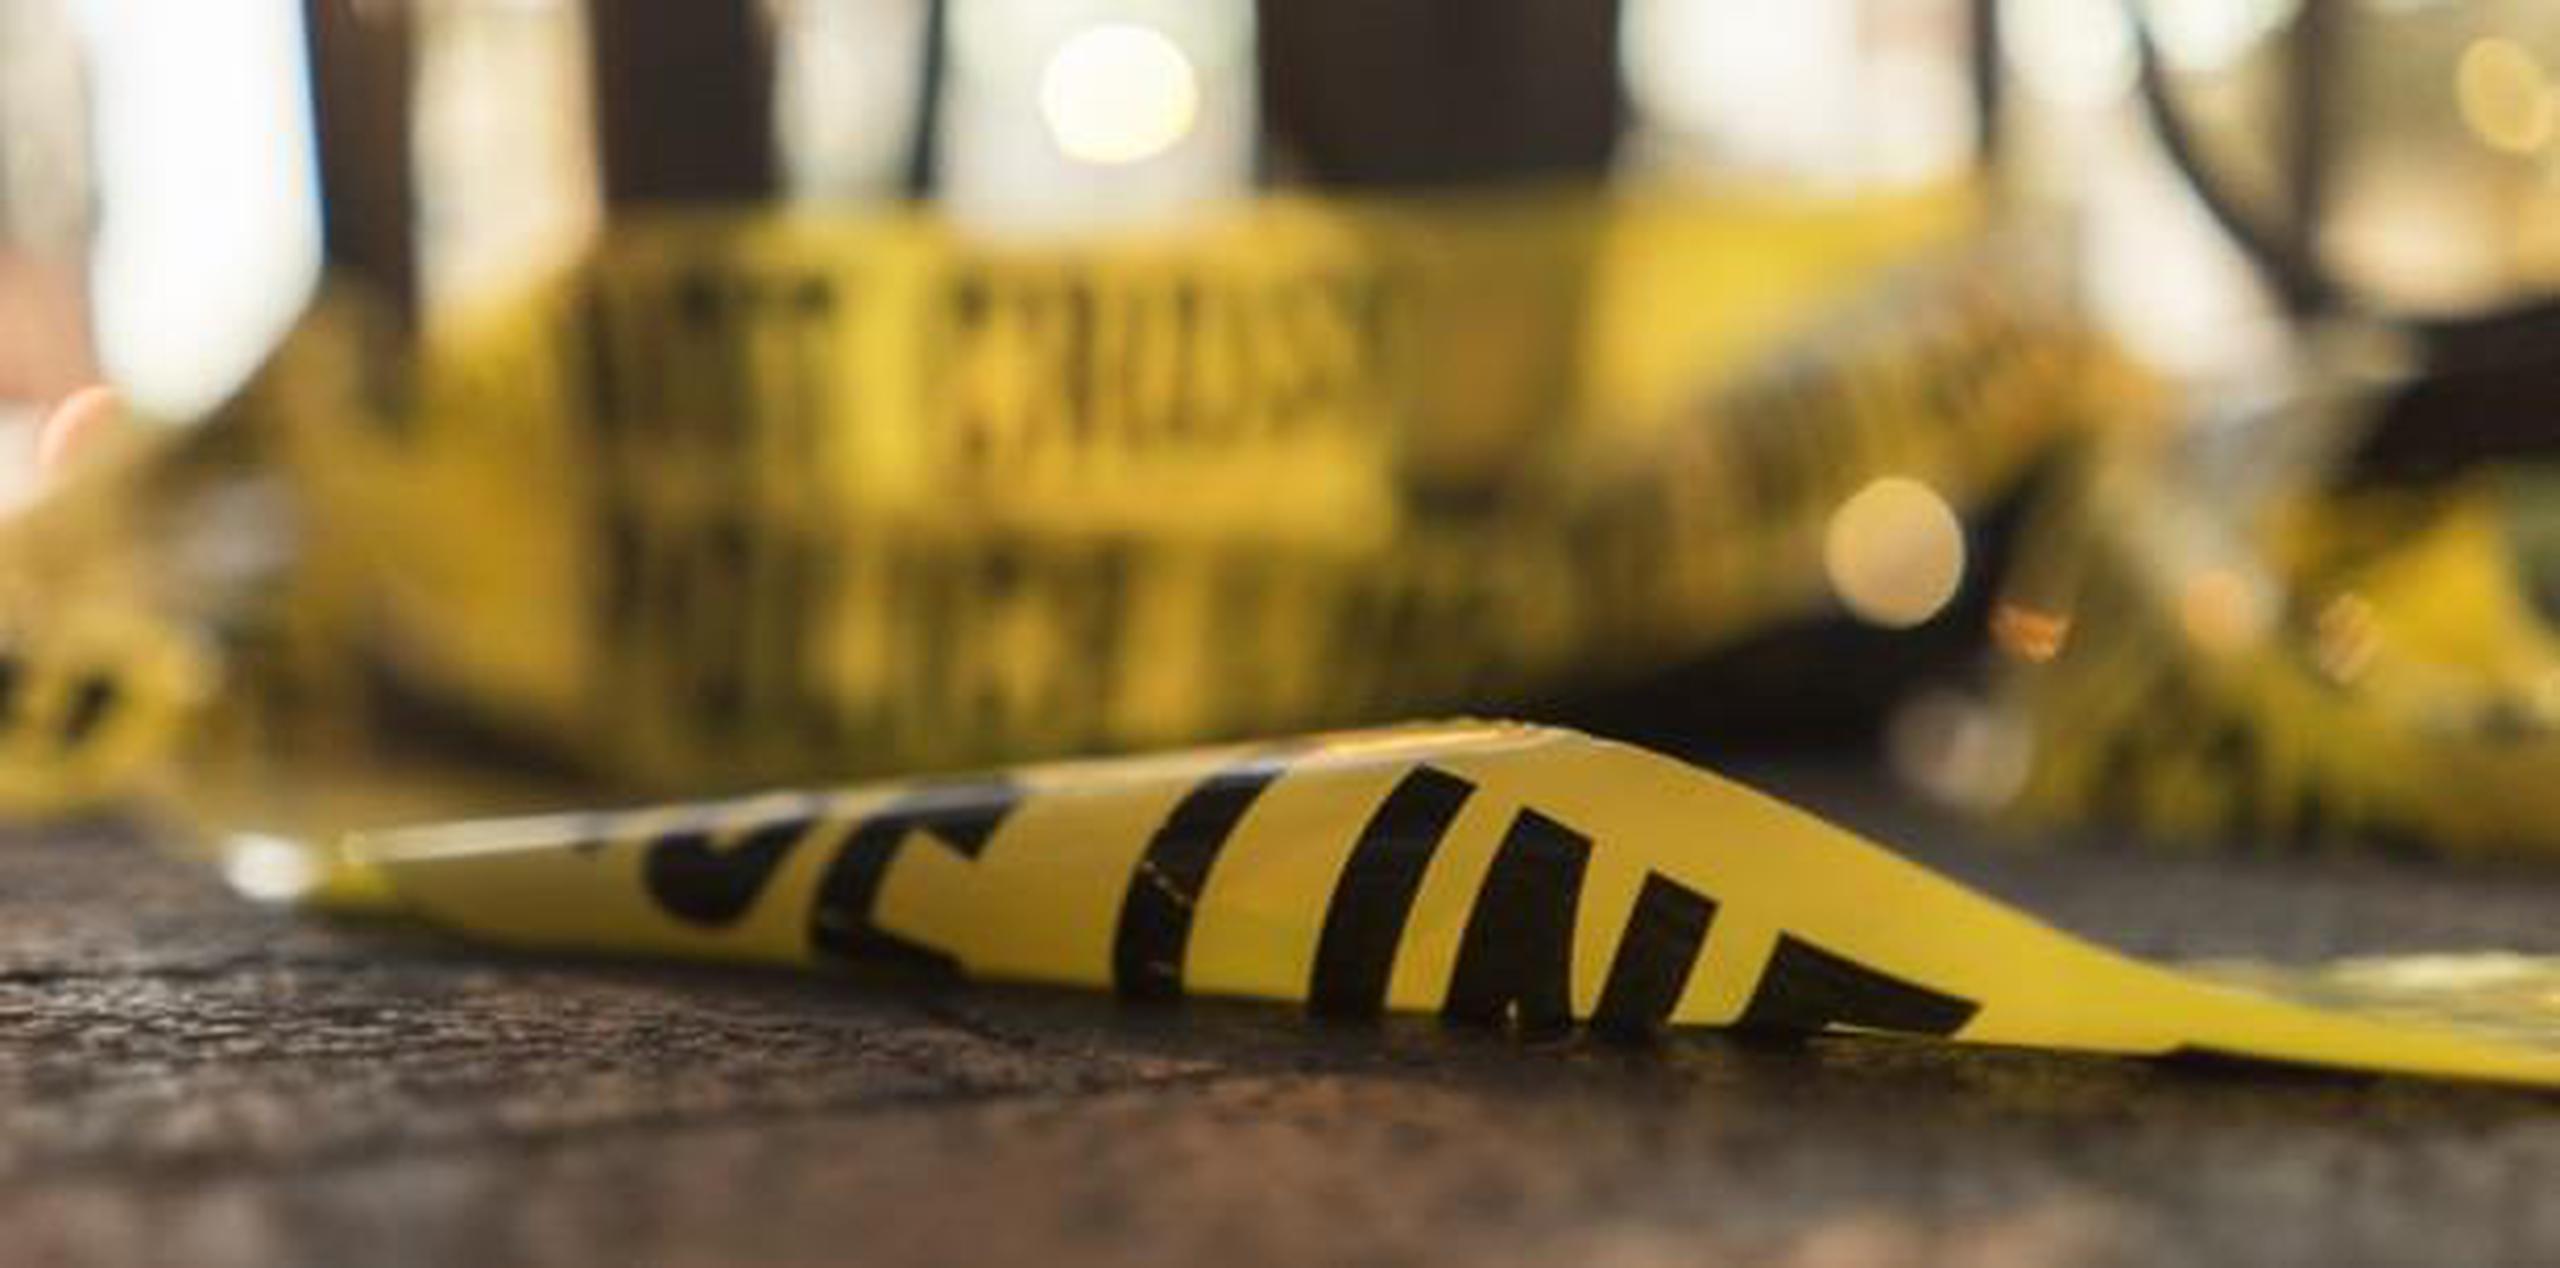 En lo que va del 2019 se han registrado 54 homicidios. (Shutterstock)